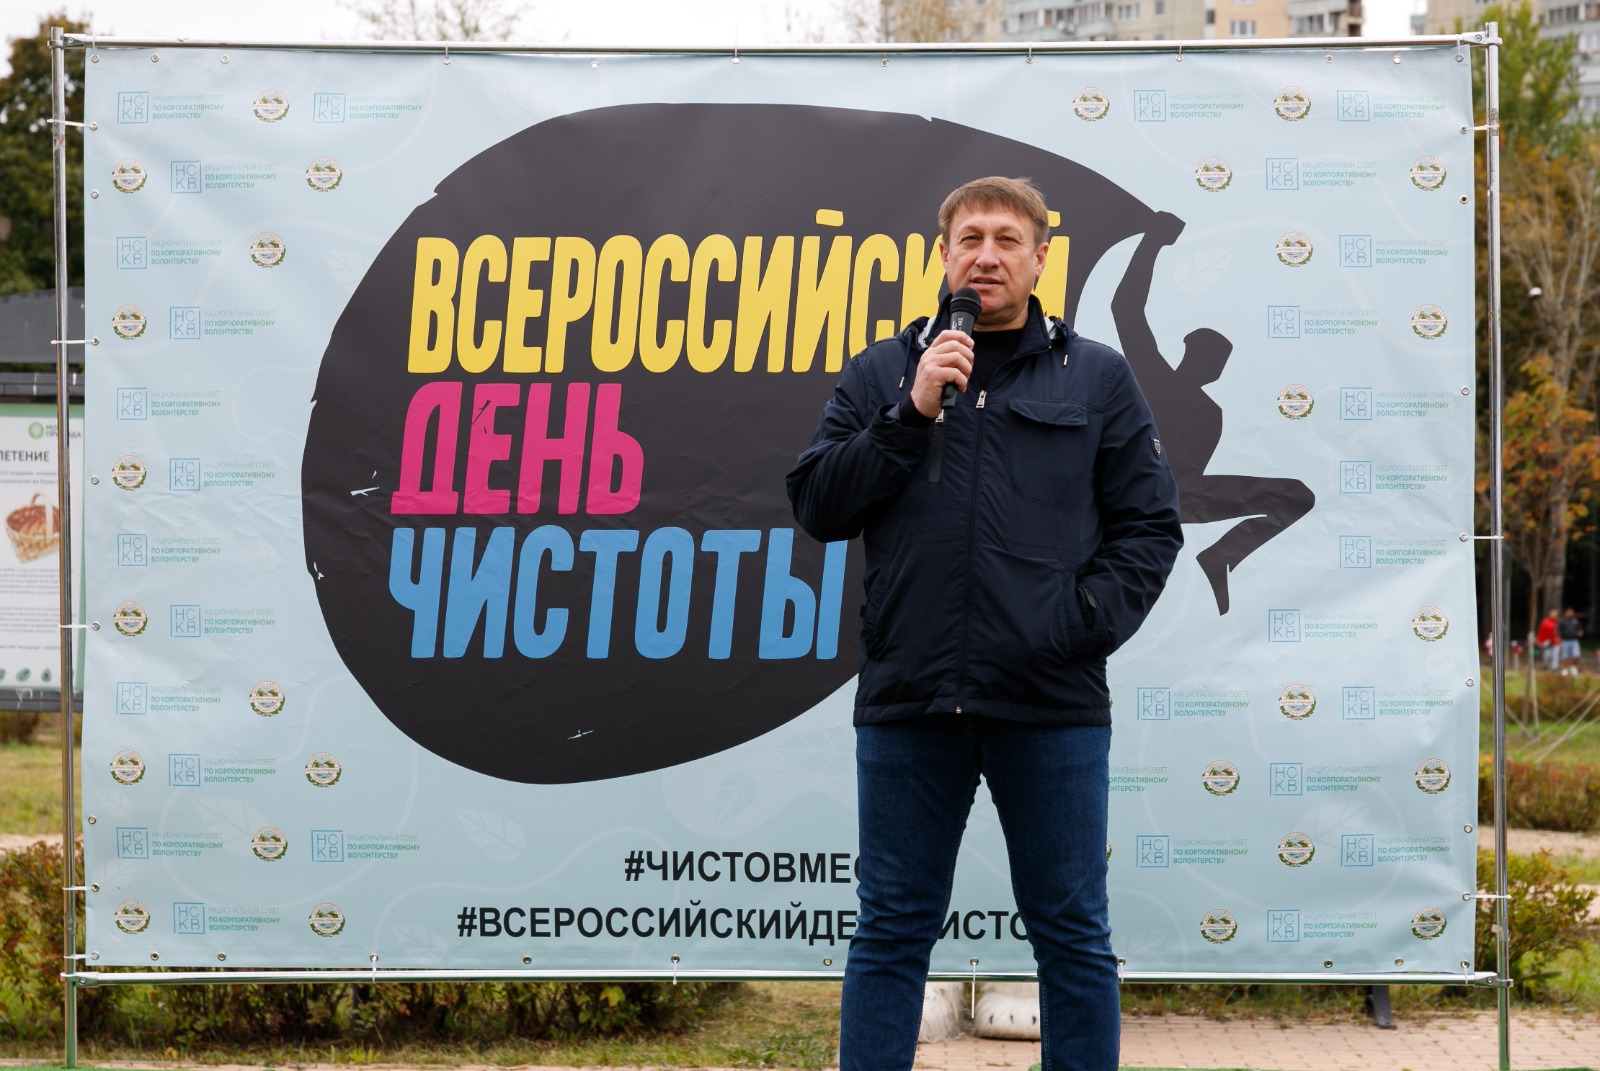 Всероссийский день чистоты объединил эко-волонтёров по всей стране - фото 2